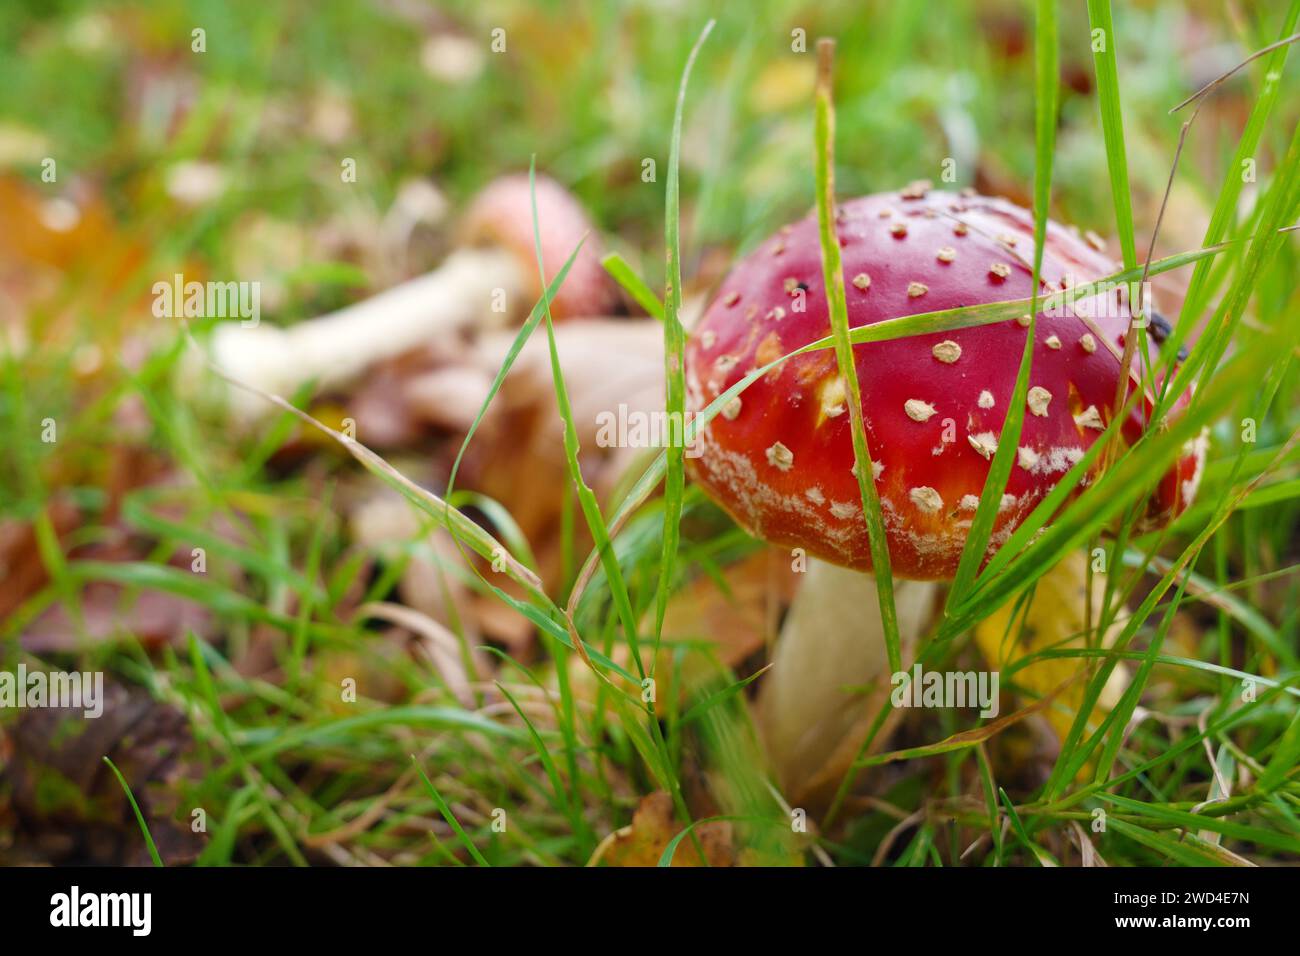 Ein schöner giftiger Pilz mit roter Kappe und weißen Punkten im Gras. Der Name ist Amanita muscaria Stockfoto